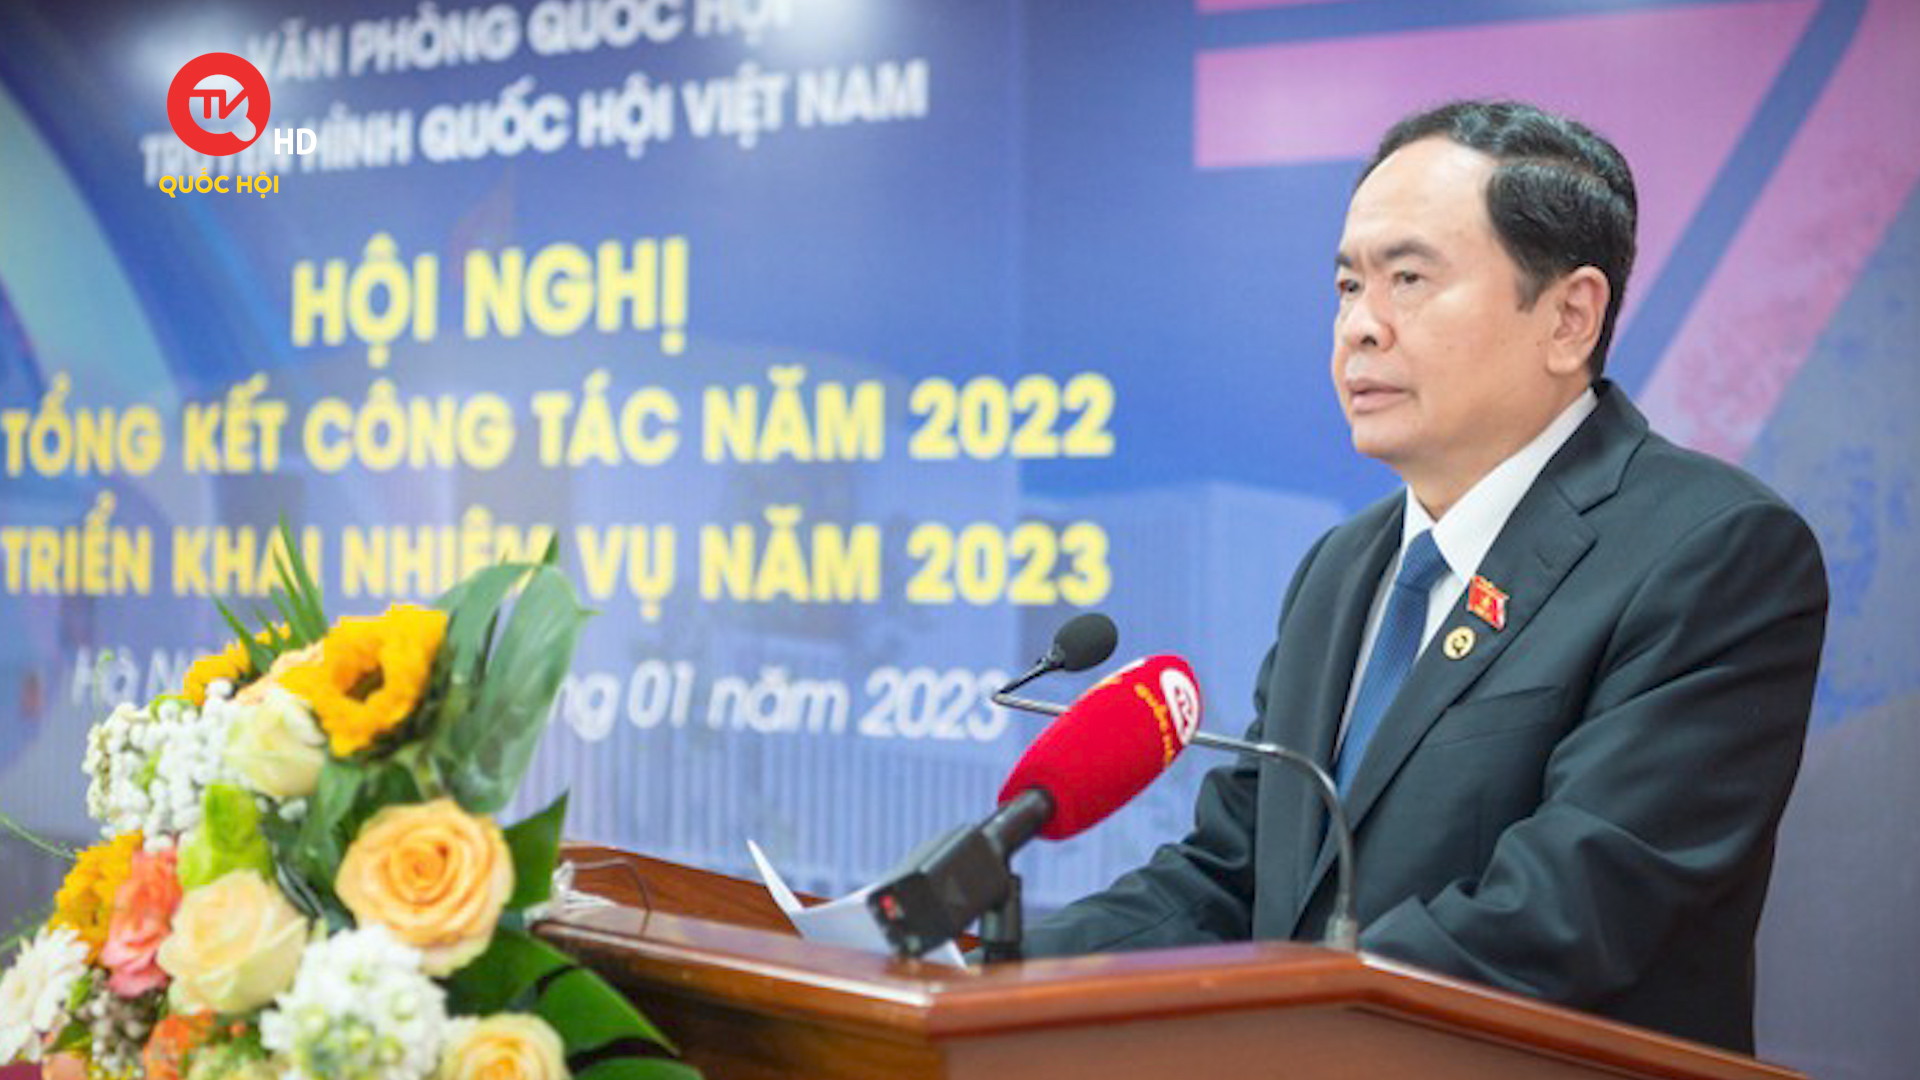 Truyền hình Quốc hội Việt Nam xây dựng chiến lược phát triển đến năm 2025, tầm nhìn 2030